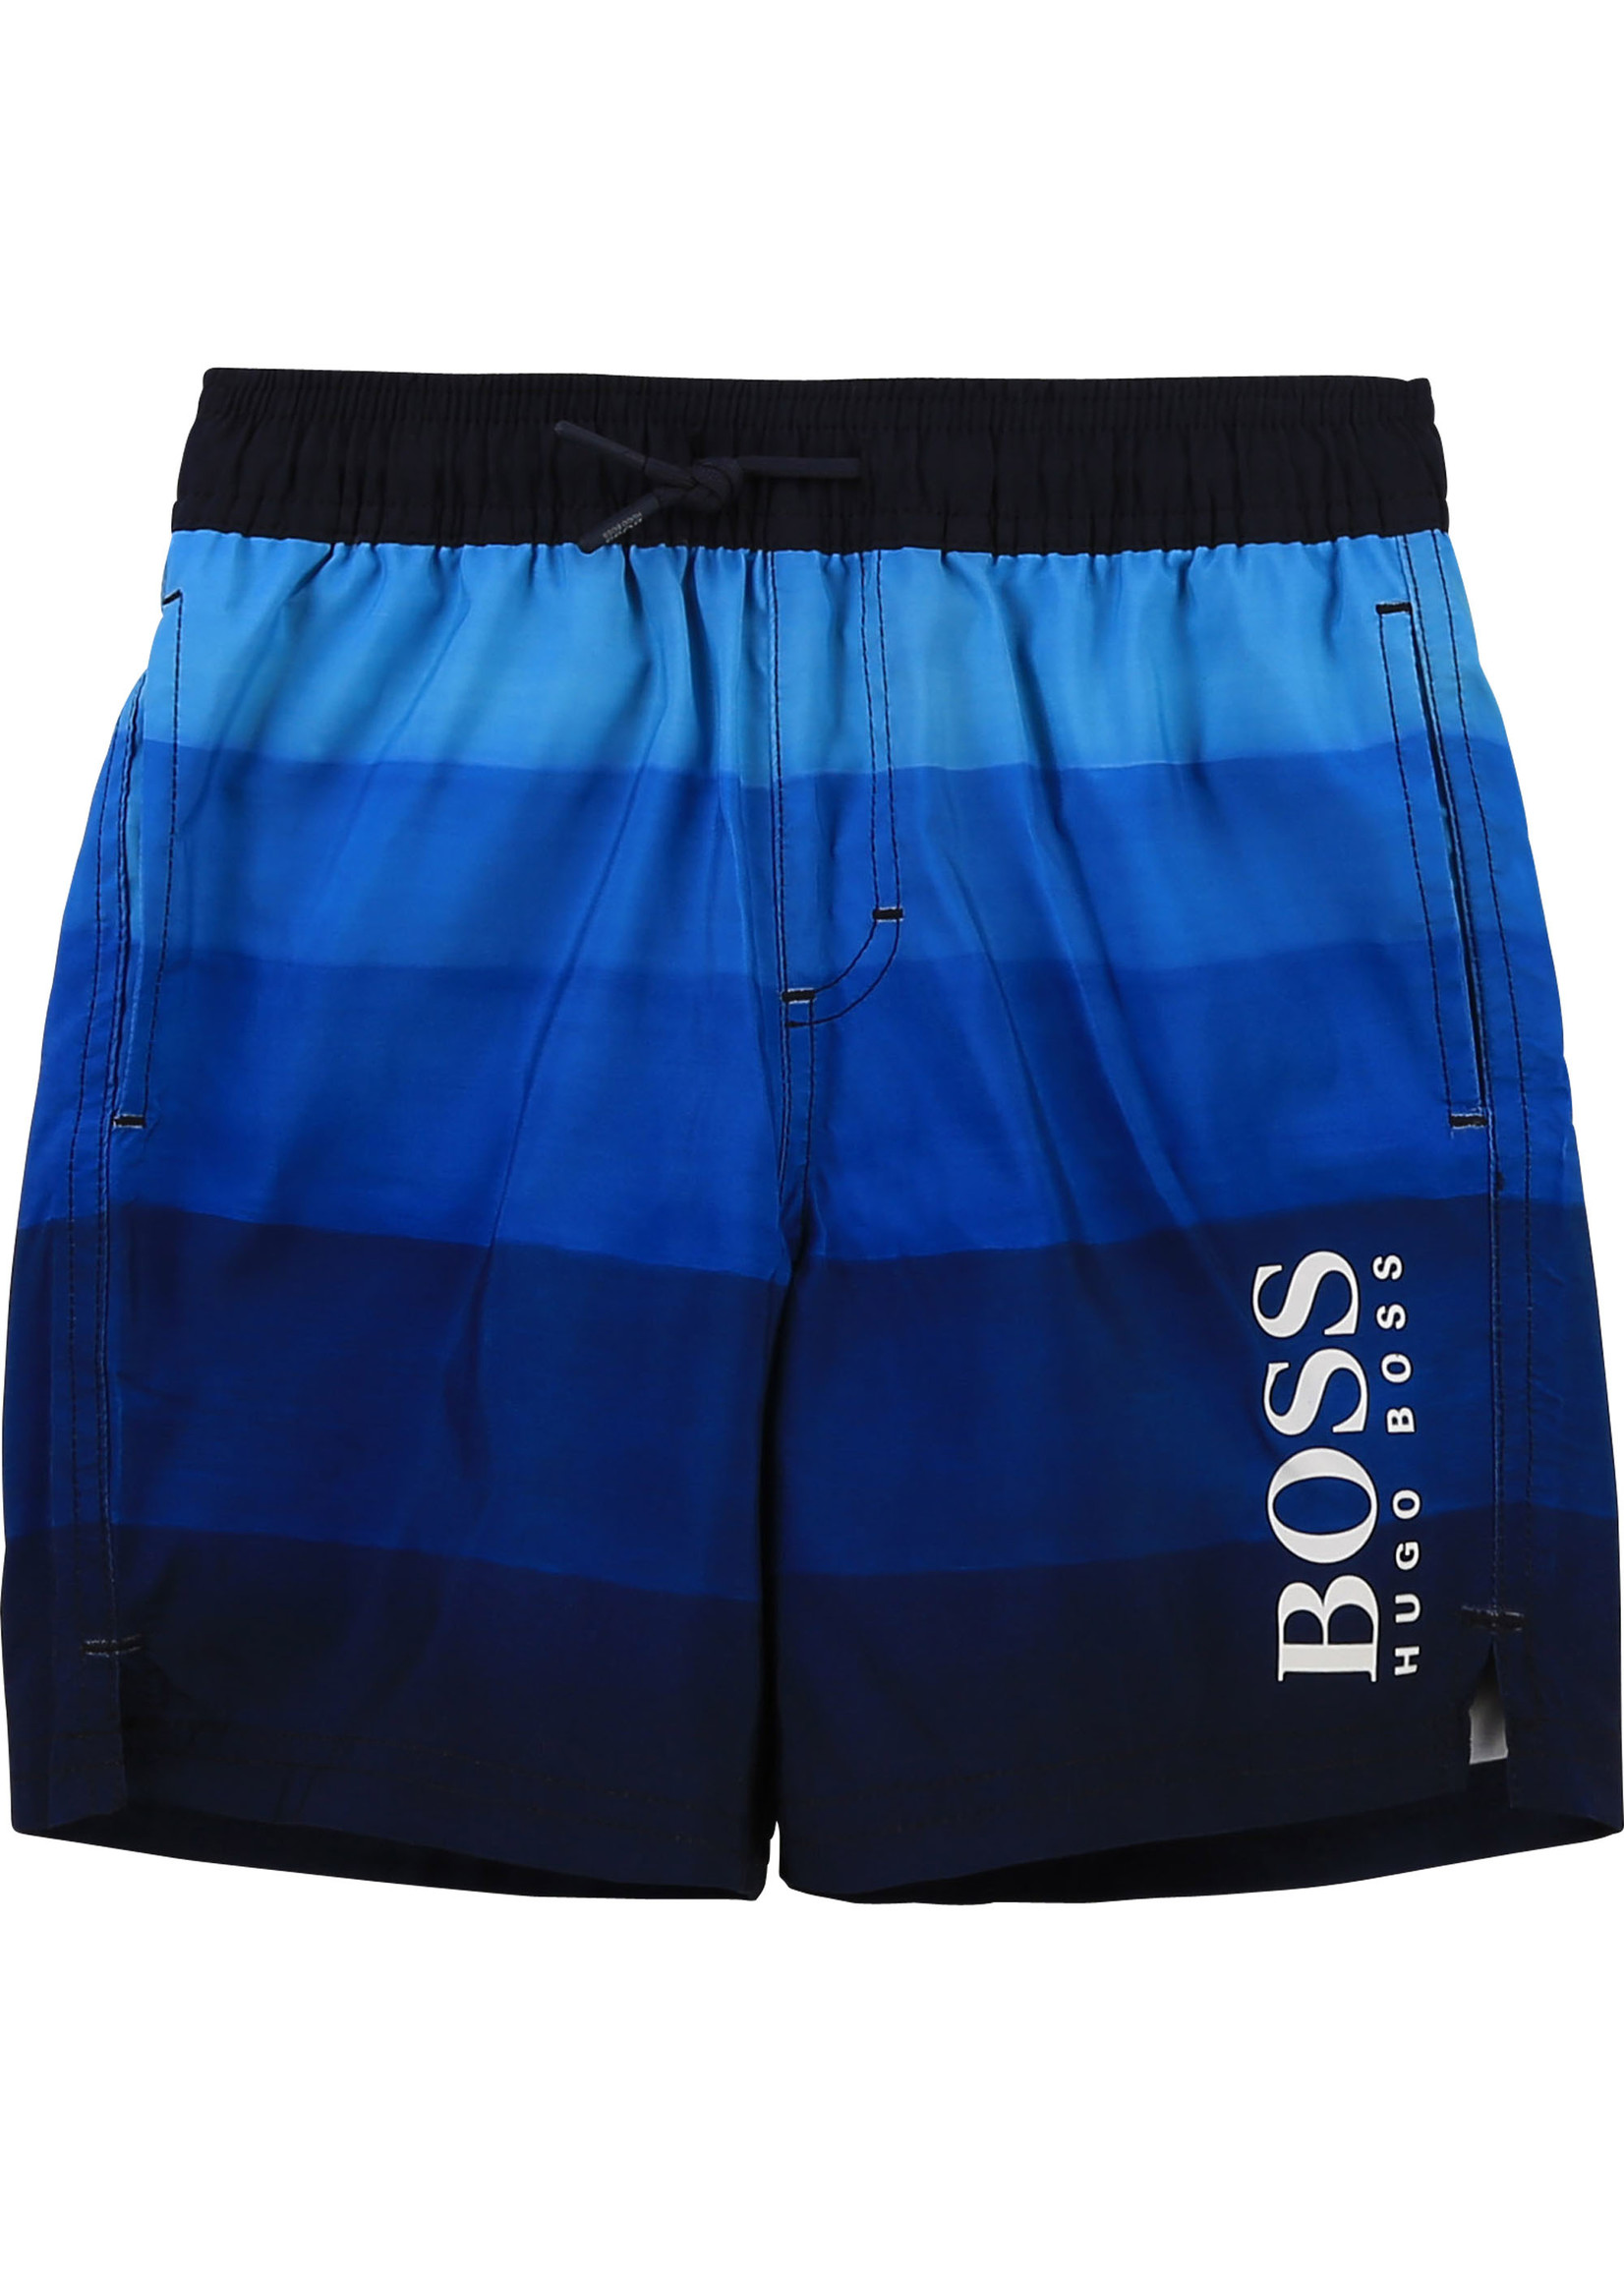 BOSS BOSS Swimshort blue - J24683